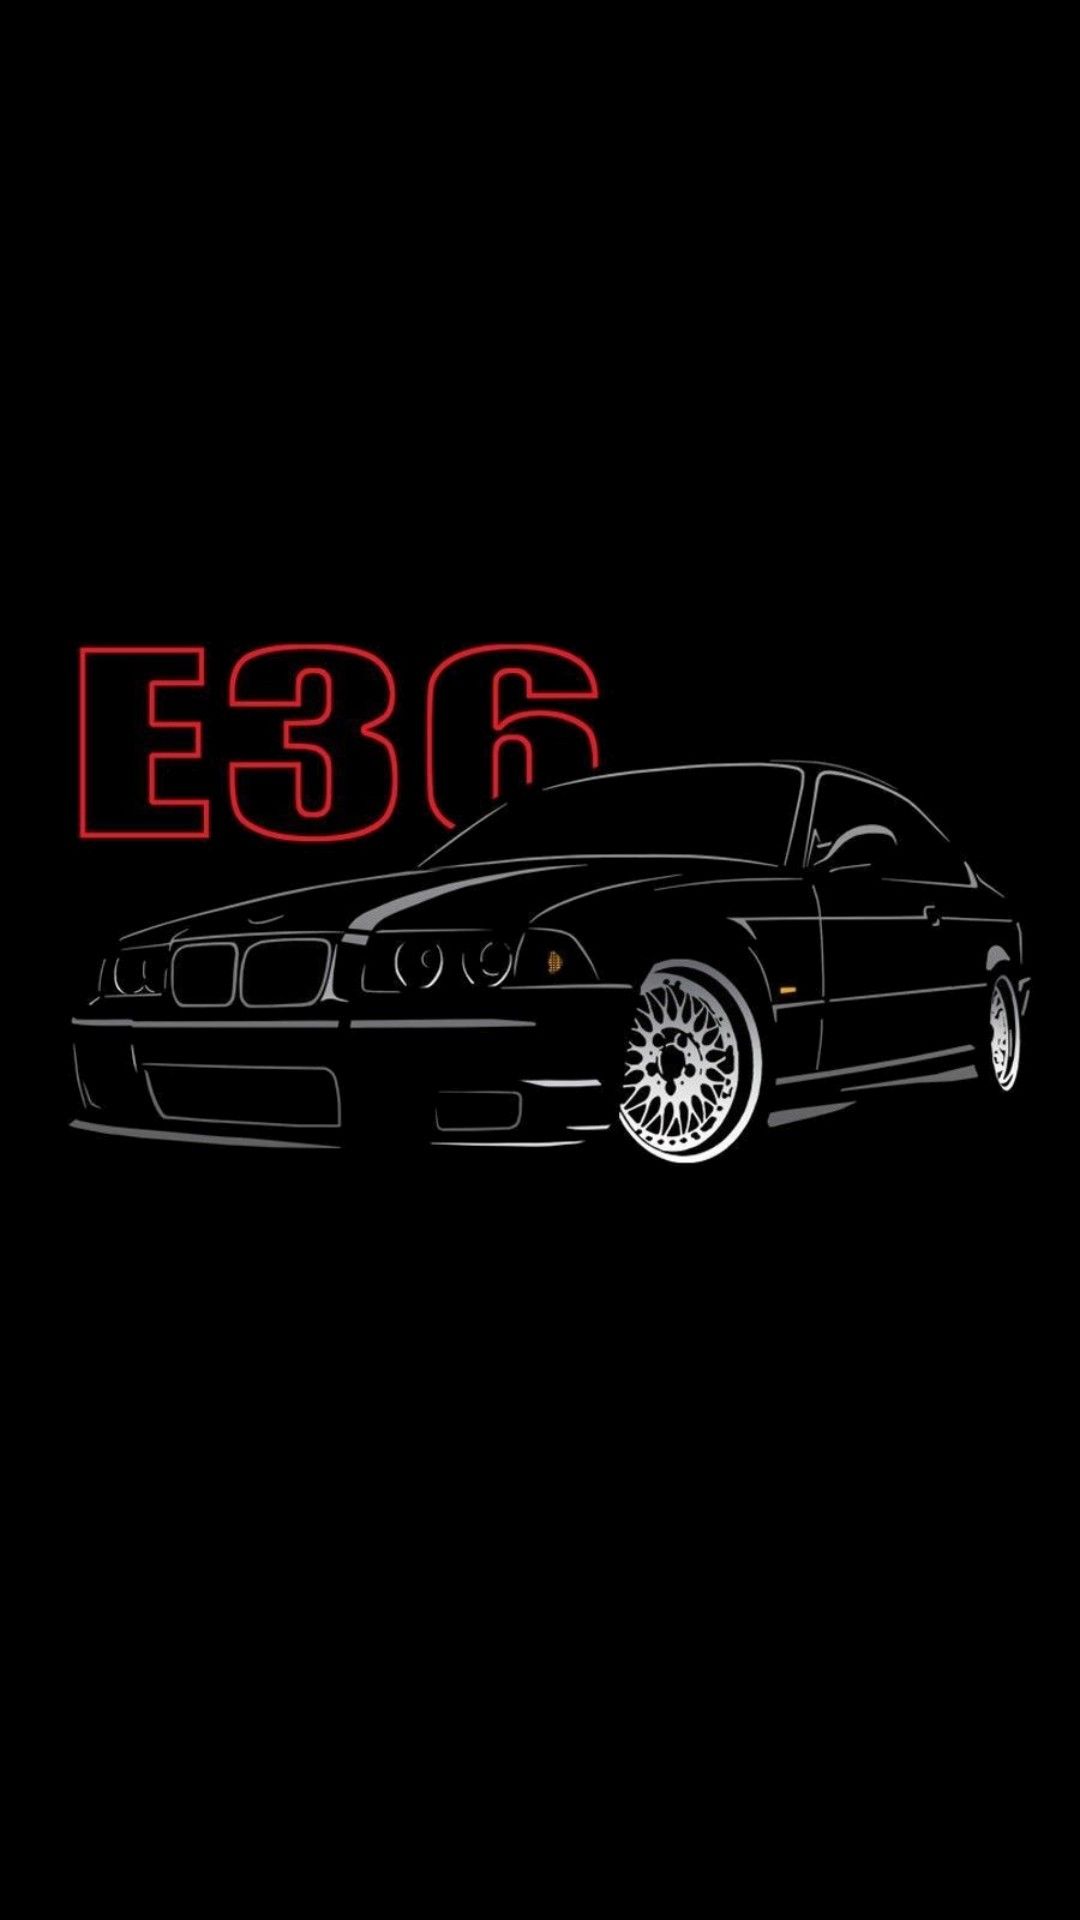 BMW M3 E36 Convertible ideas. bmw, bmw m bmw wallpaper